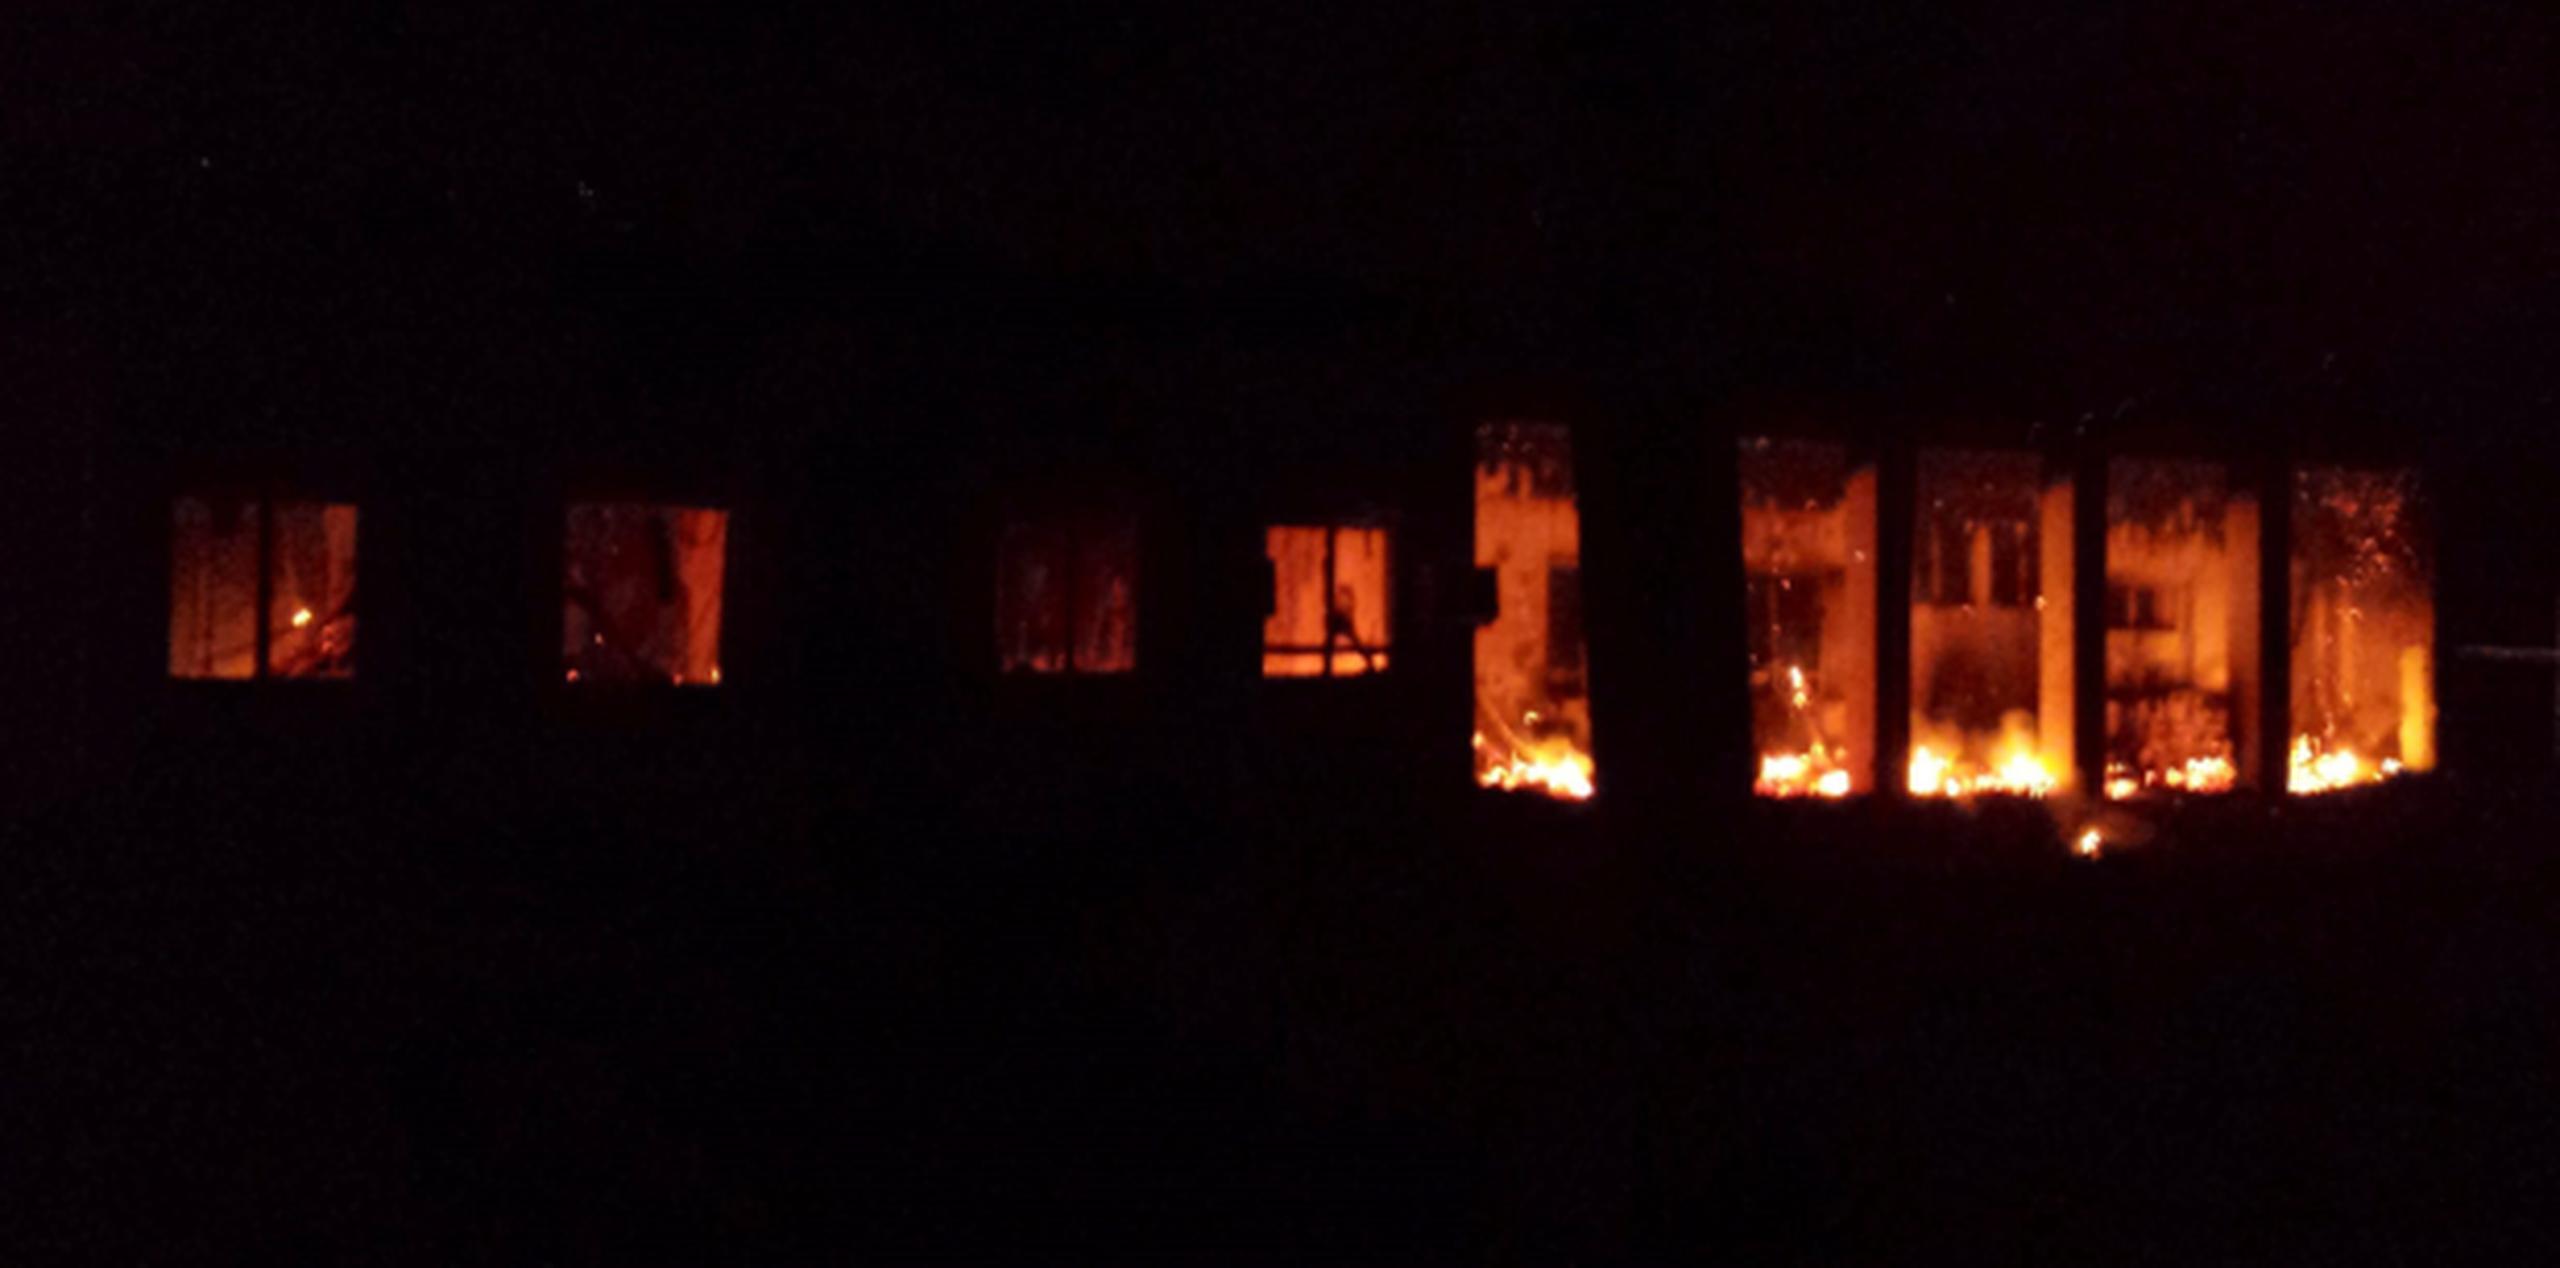 Imágenes suministradas por Médicos Sin Fronteras muestran el hospital en llamas tras el ataque aéreo, presuntamente cometido por fuerzas estadounidenses. (EFE)